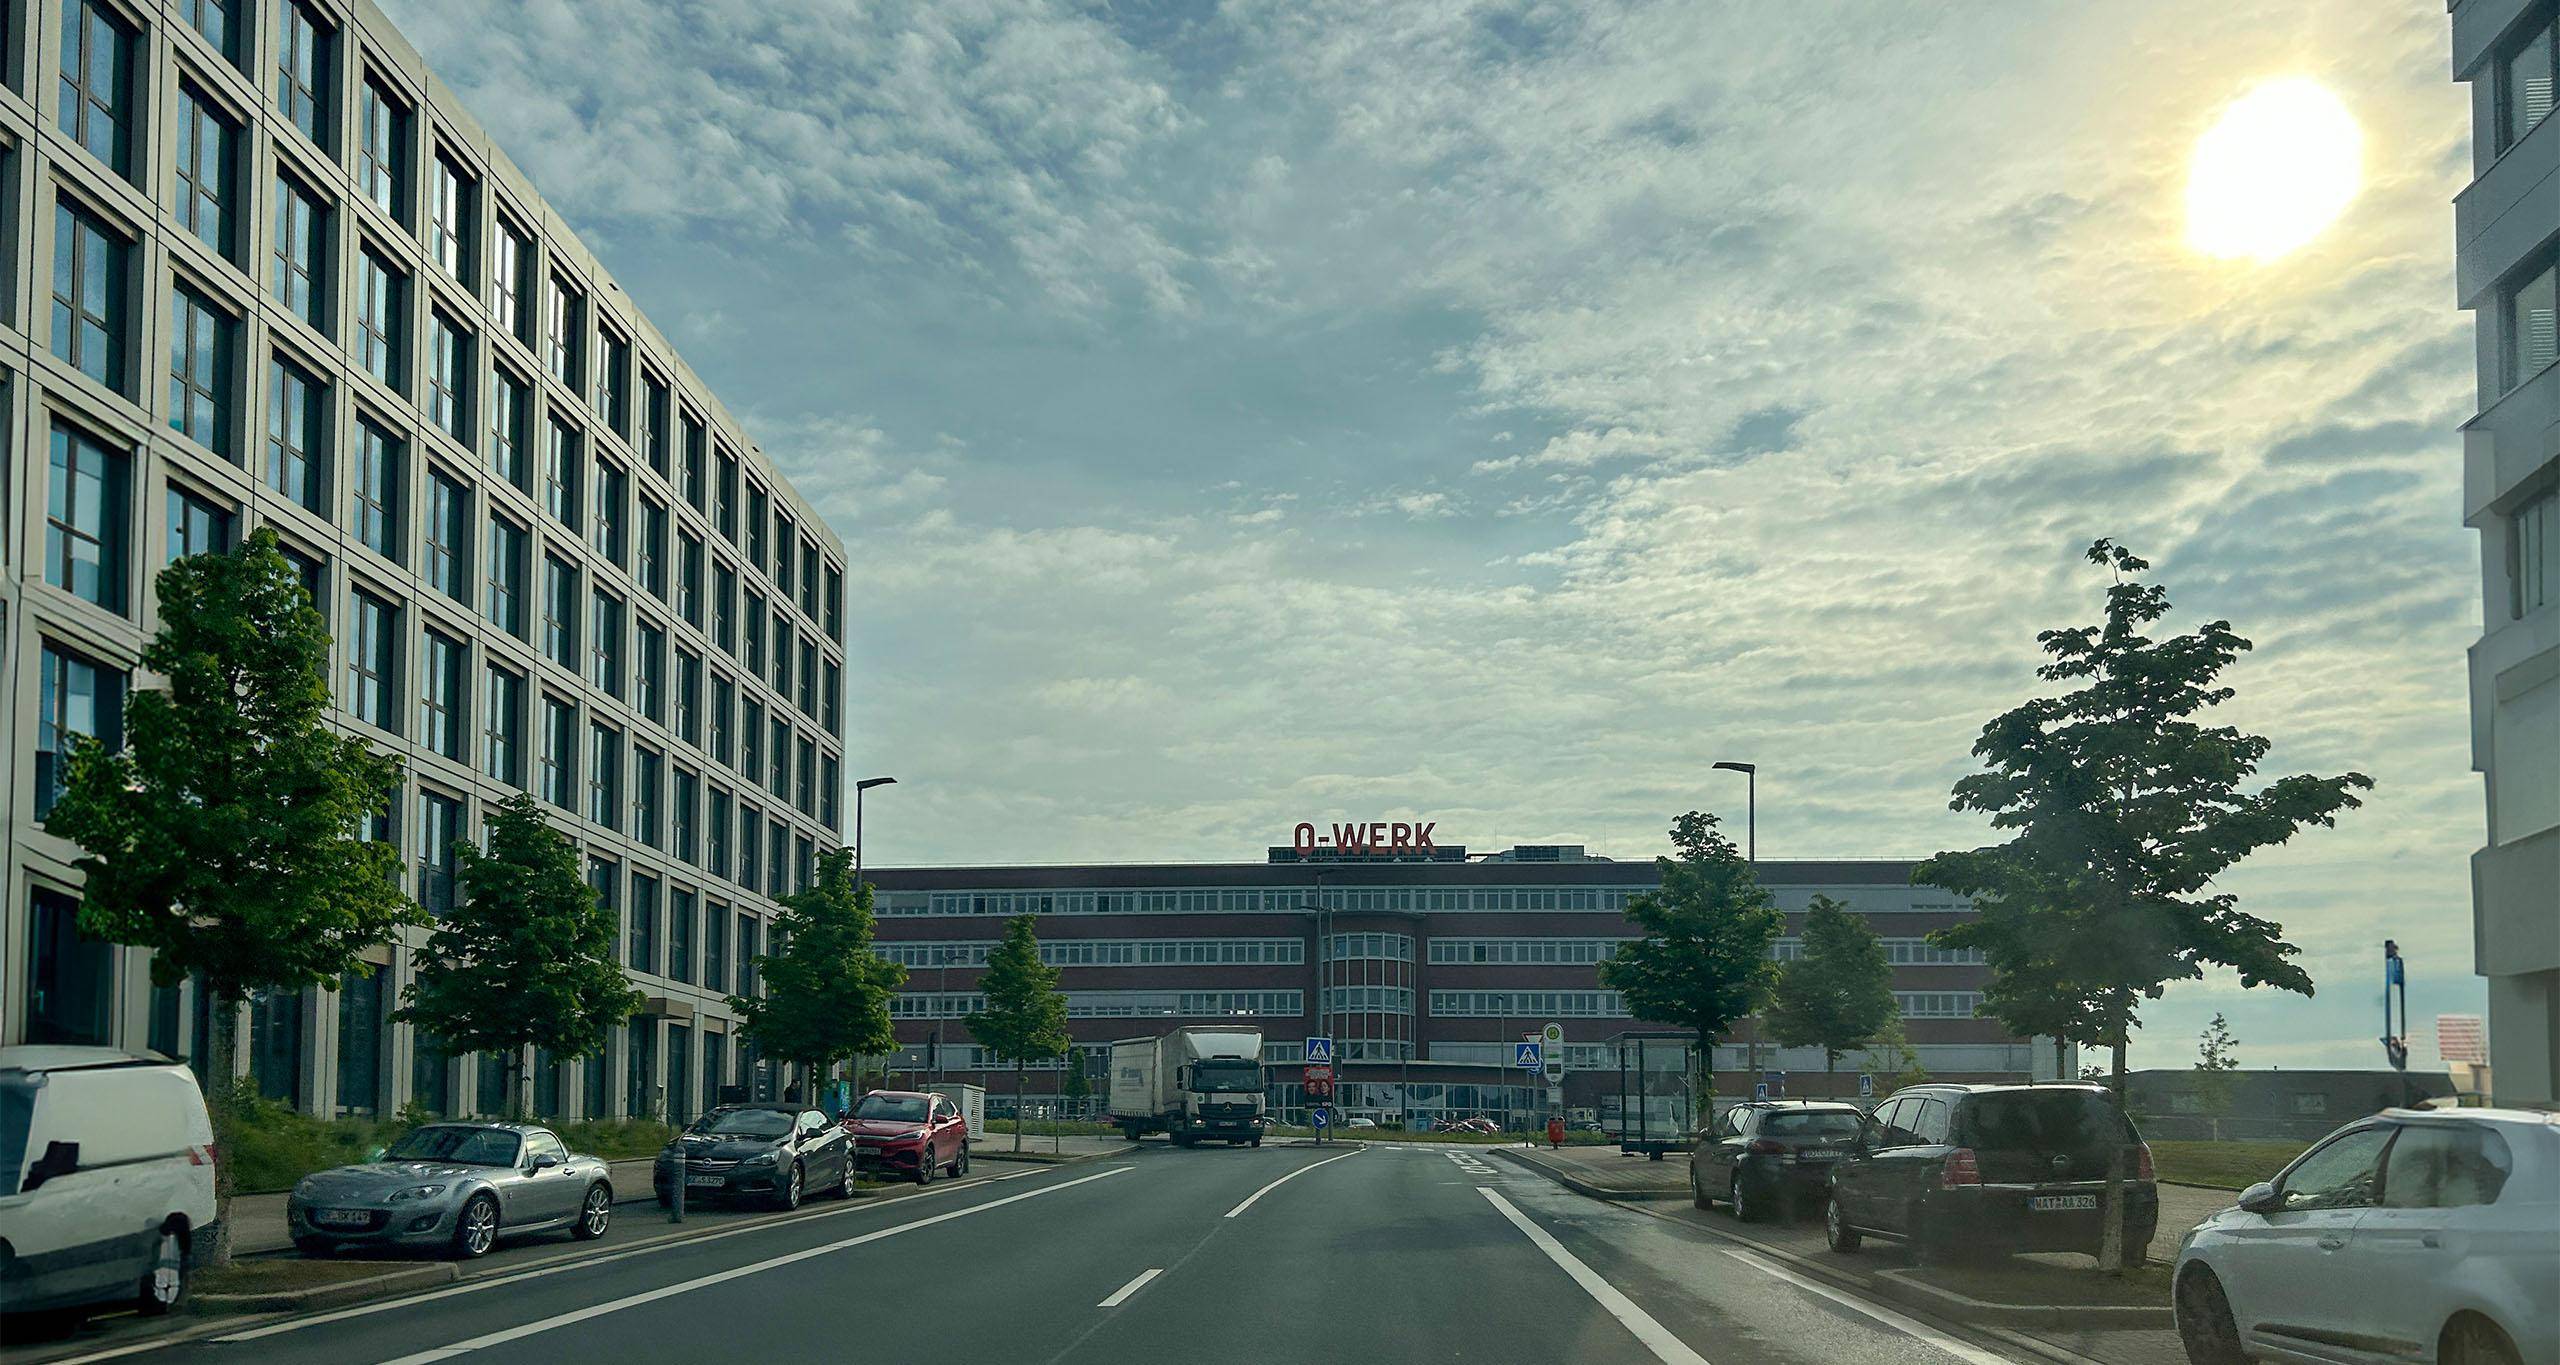 Ein Bild vom O-Werk Landmarken in Bochum